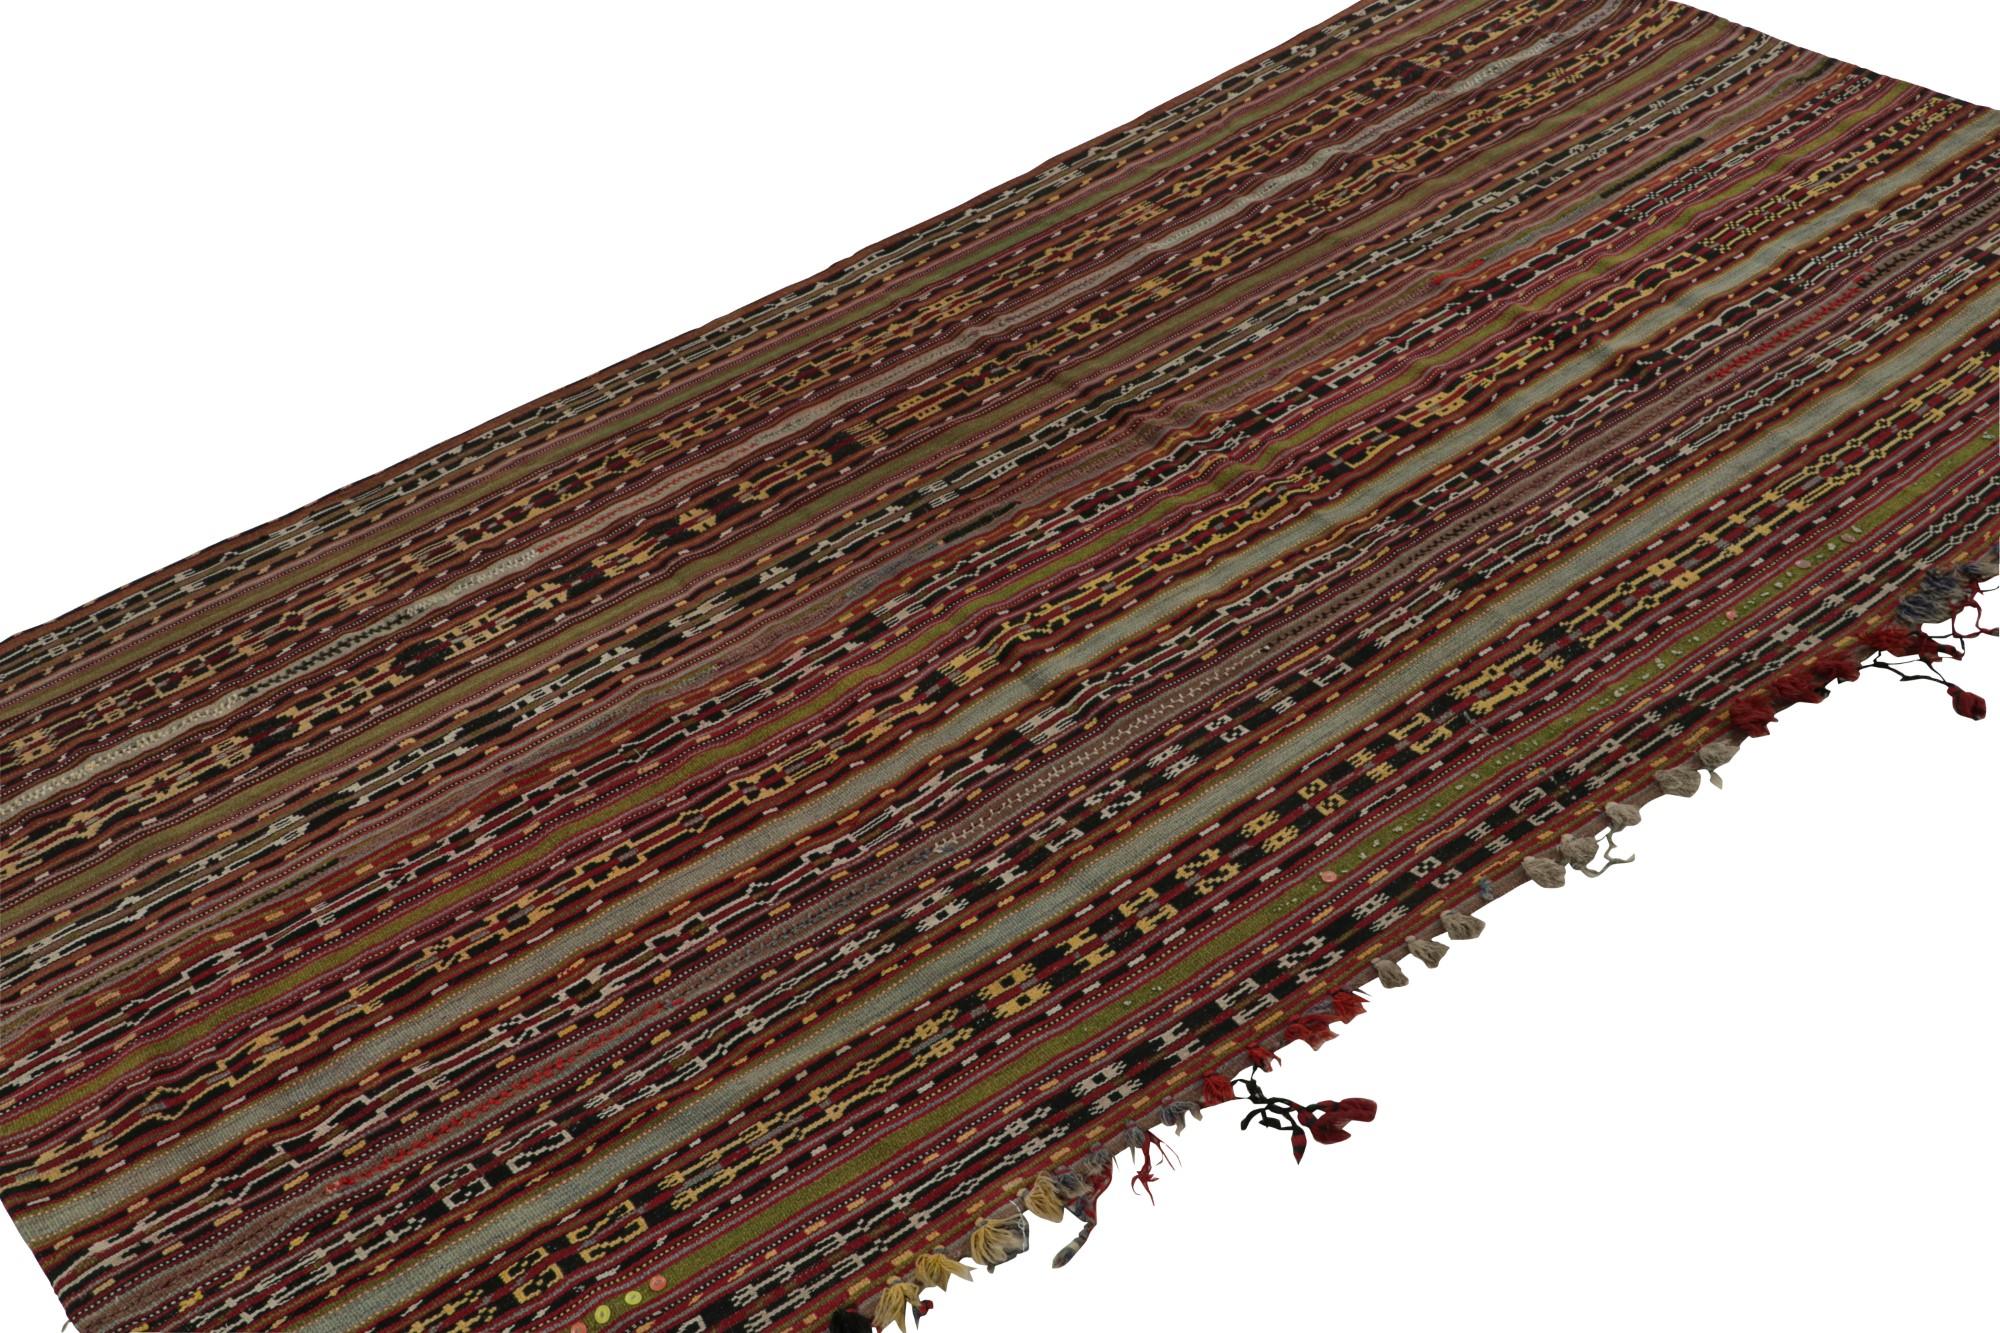 Dieser handgewebte afghanische Stammes-Kilimteppich im Format 5x7 aus Wolle (ca. 1950-1960) ist ein lebendiges Werk der Volkskunst und ein exzentrisches, handgefertigtes Flachgewebe voller Kultur und Unterscheidungskraft. 

Über das Design: